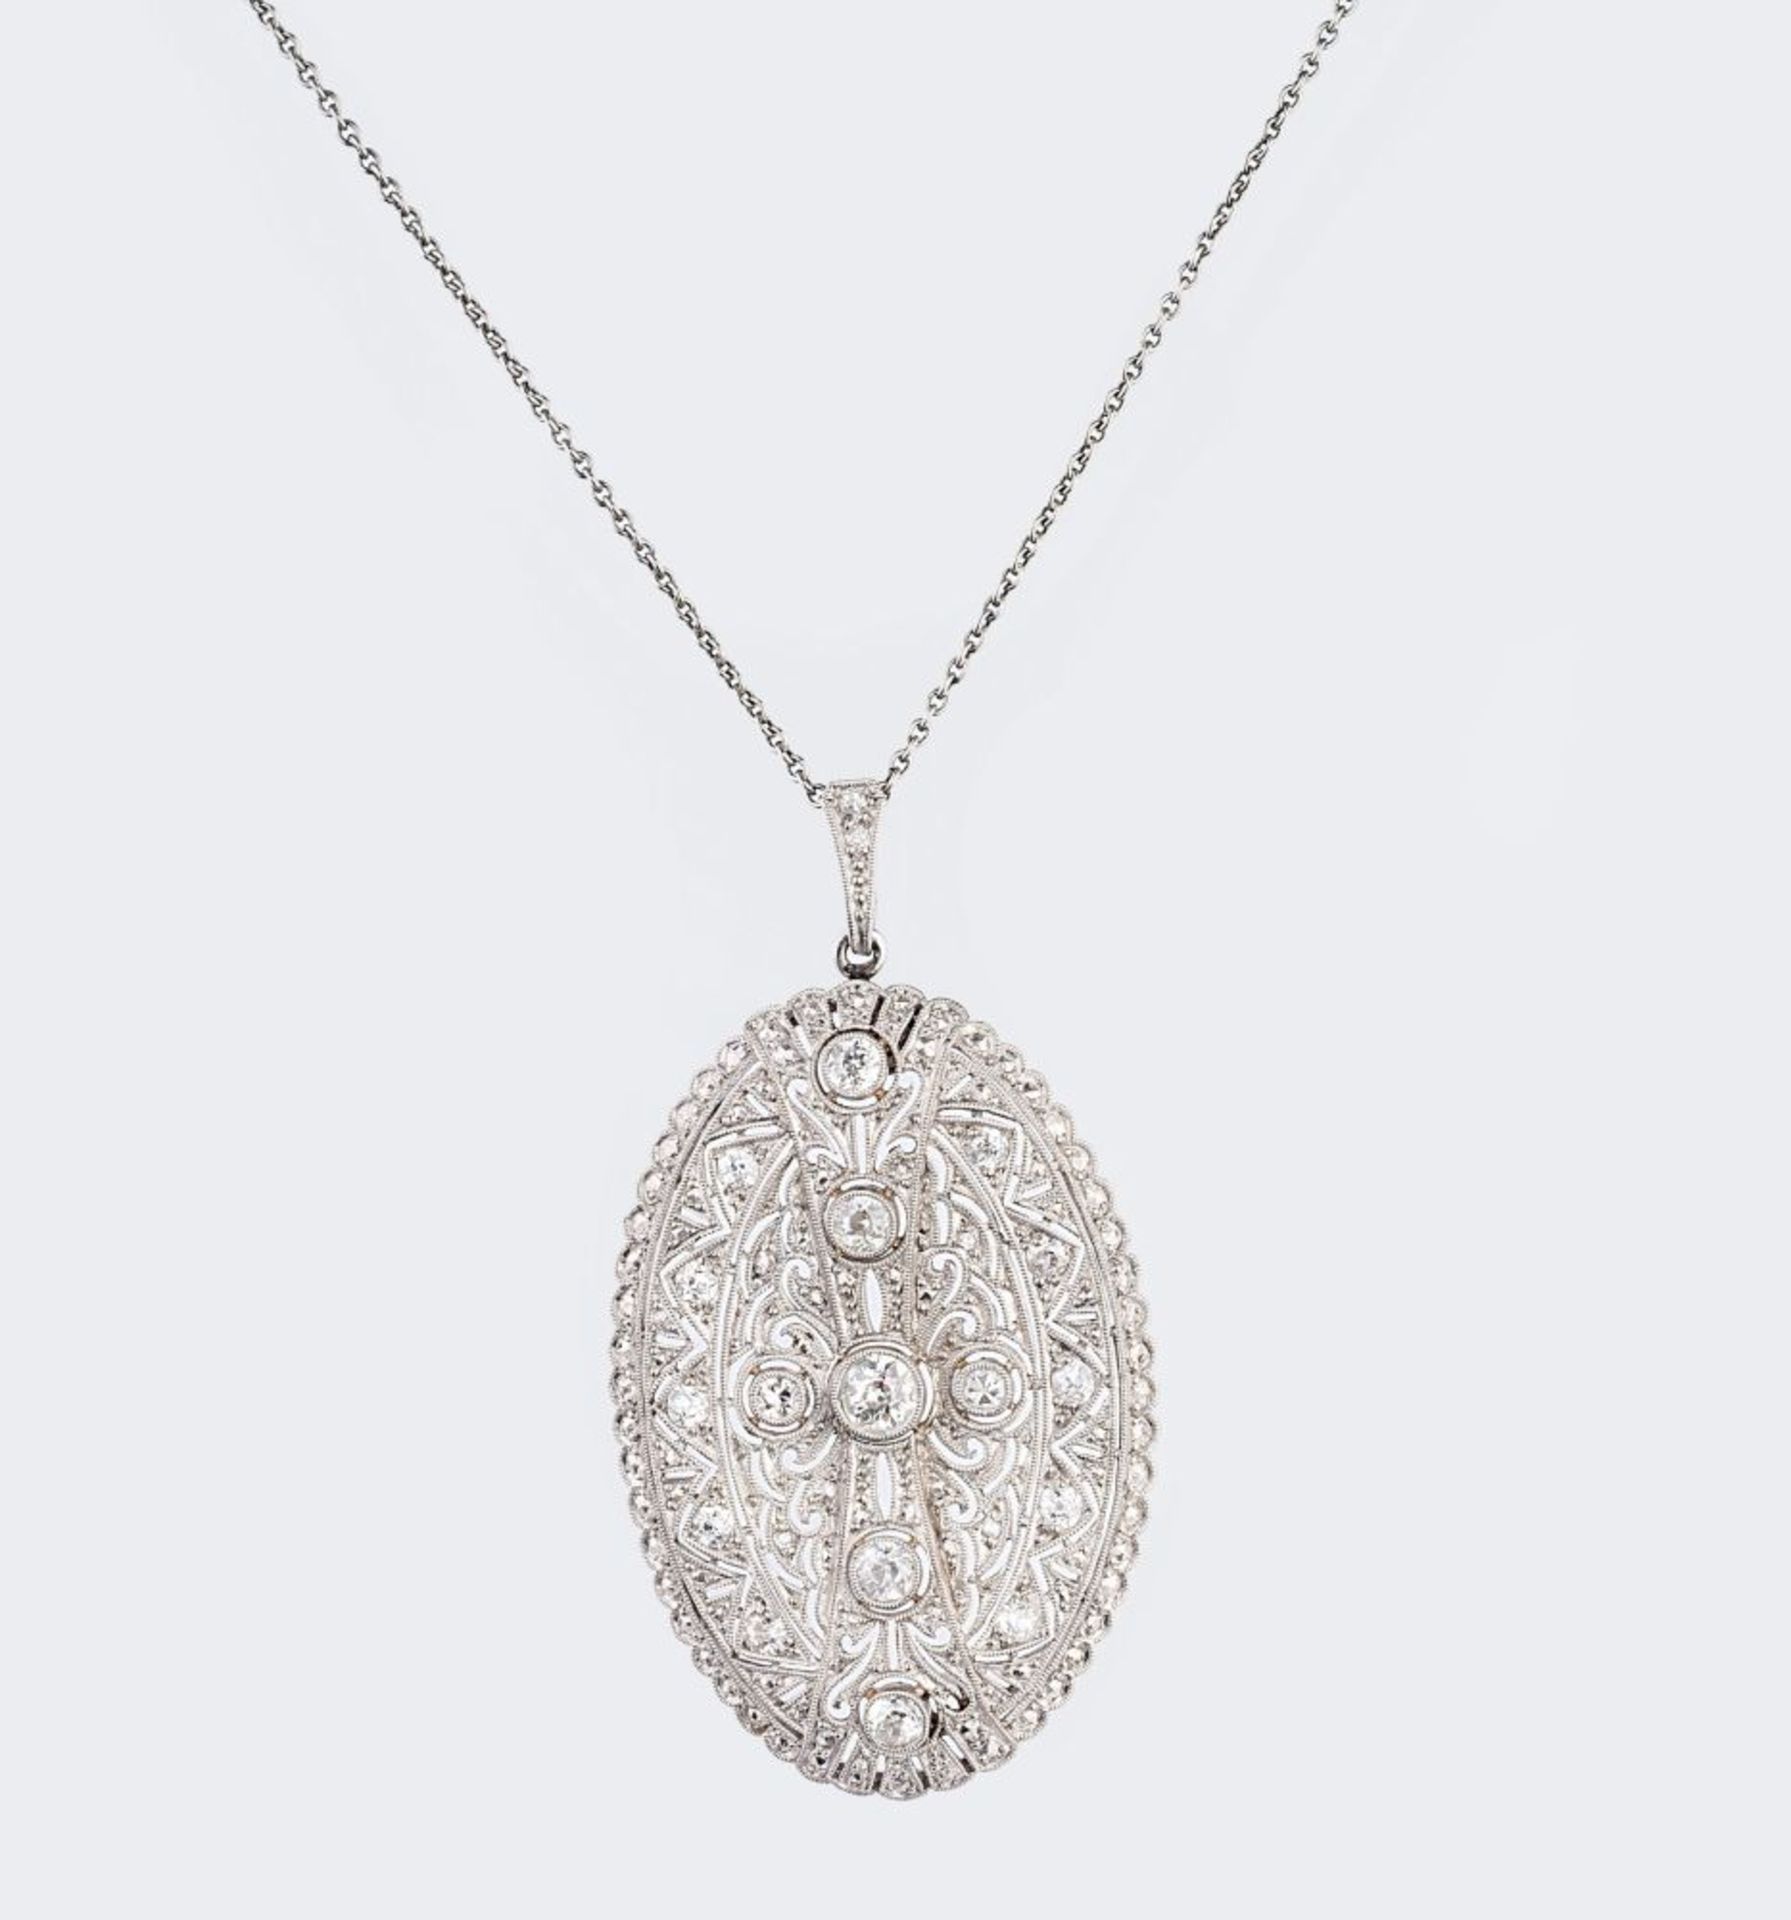 An Art-déco Diamond Pendant on Necklace.